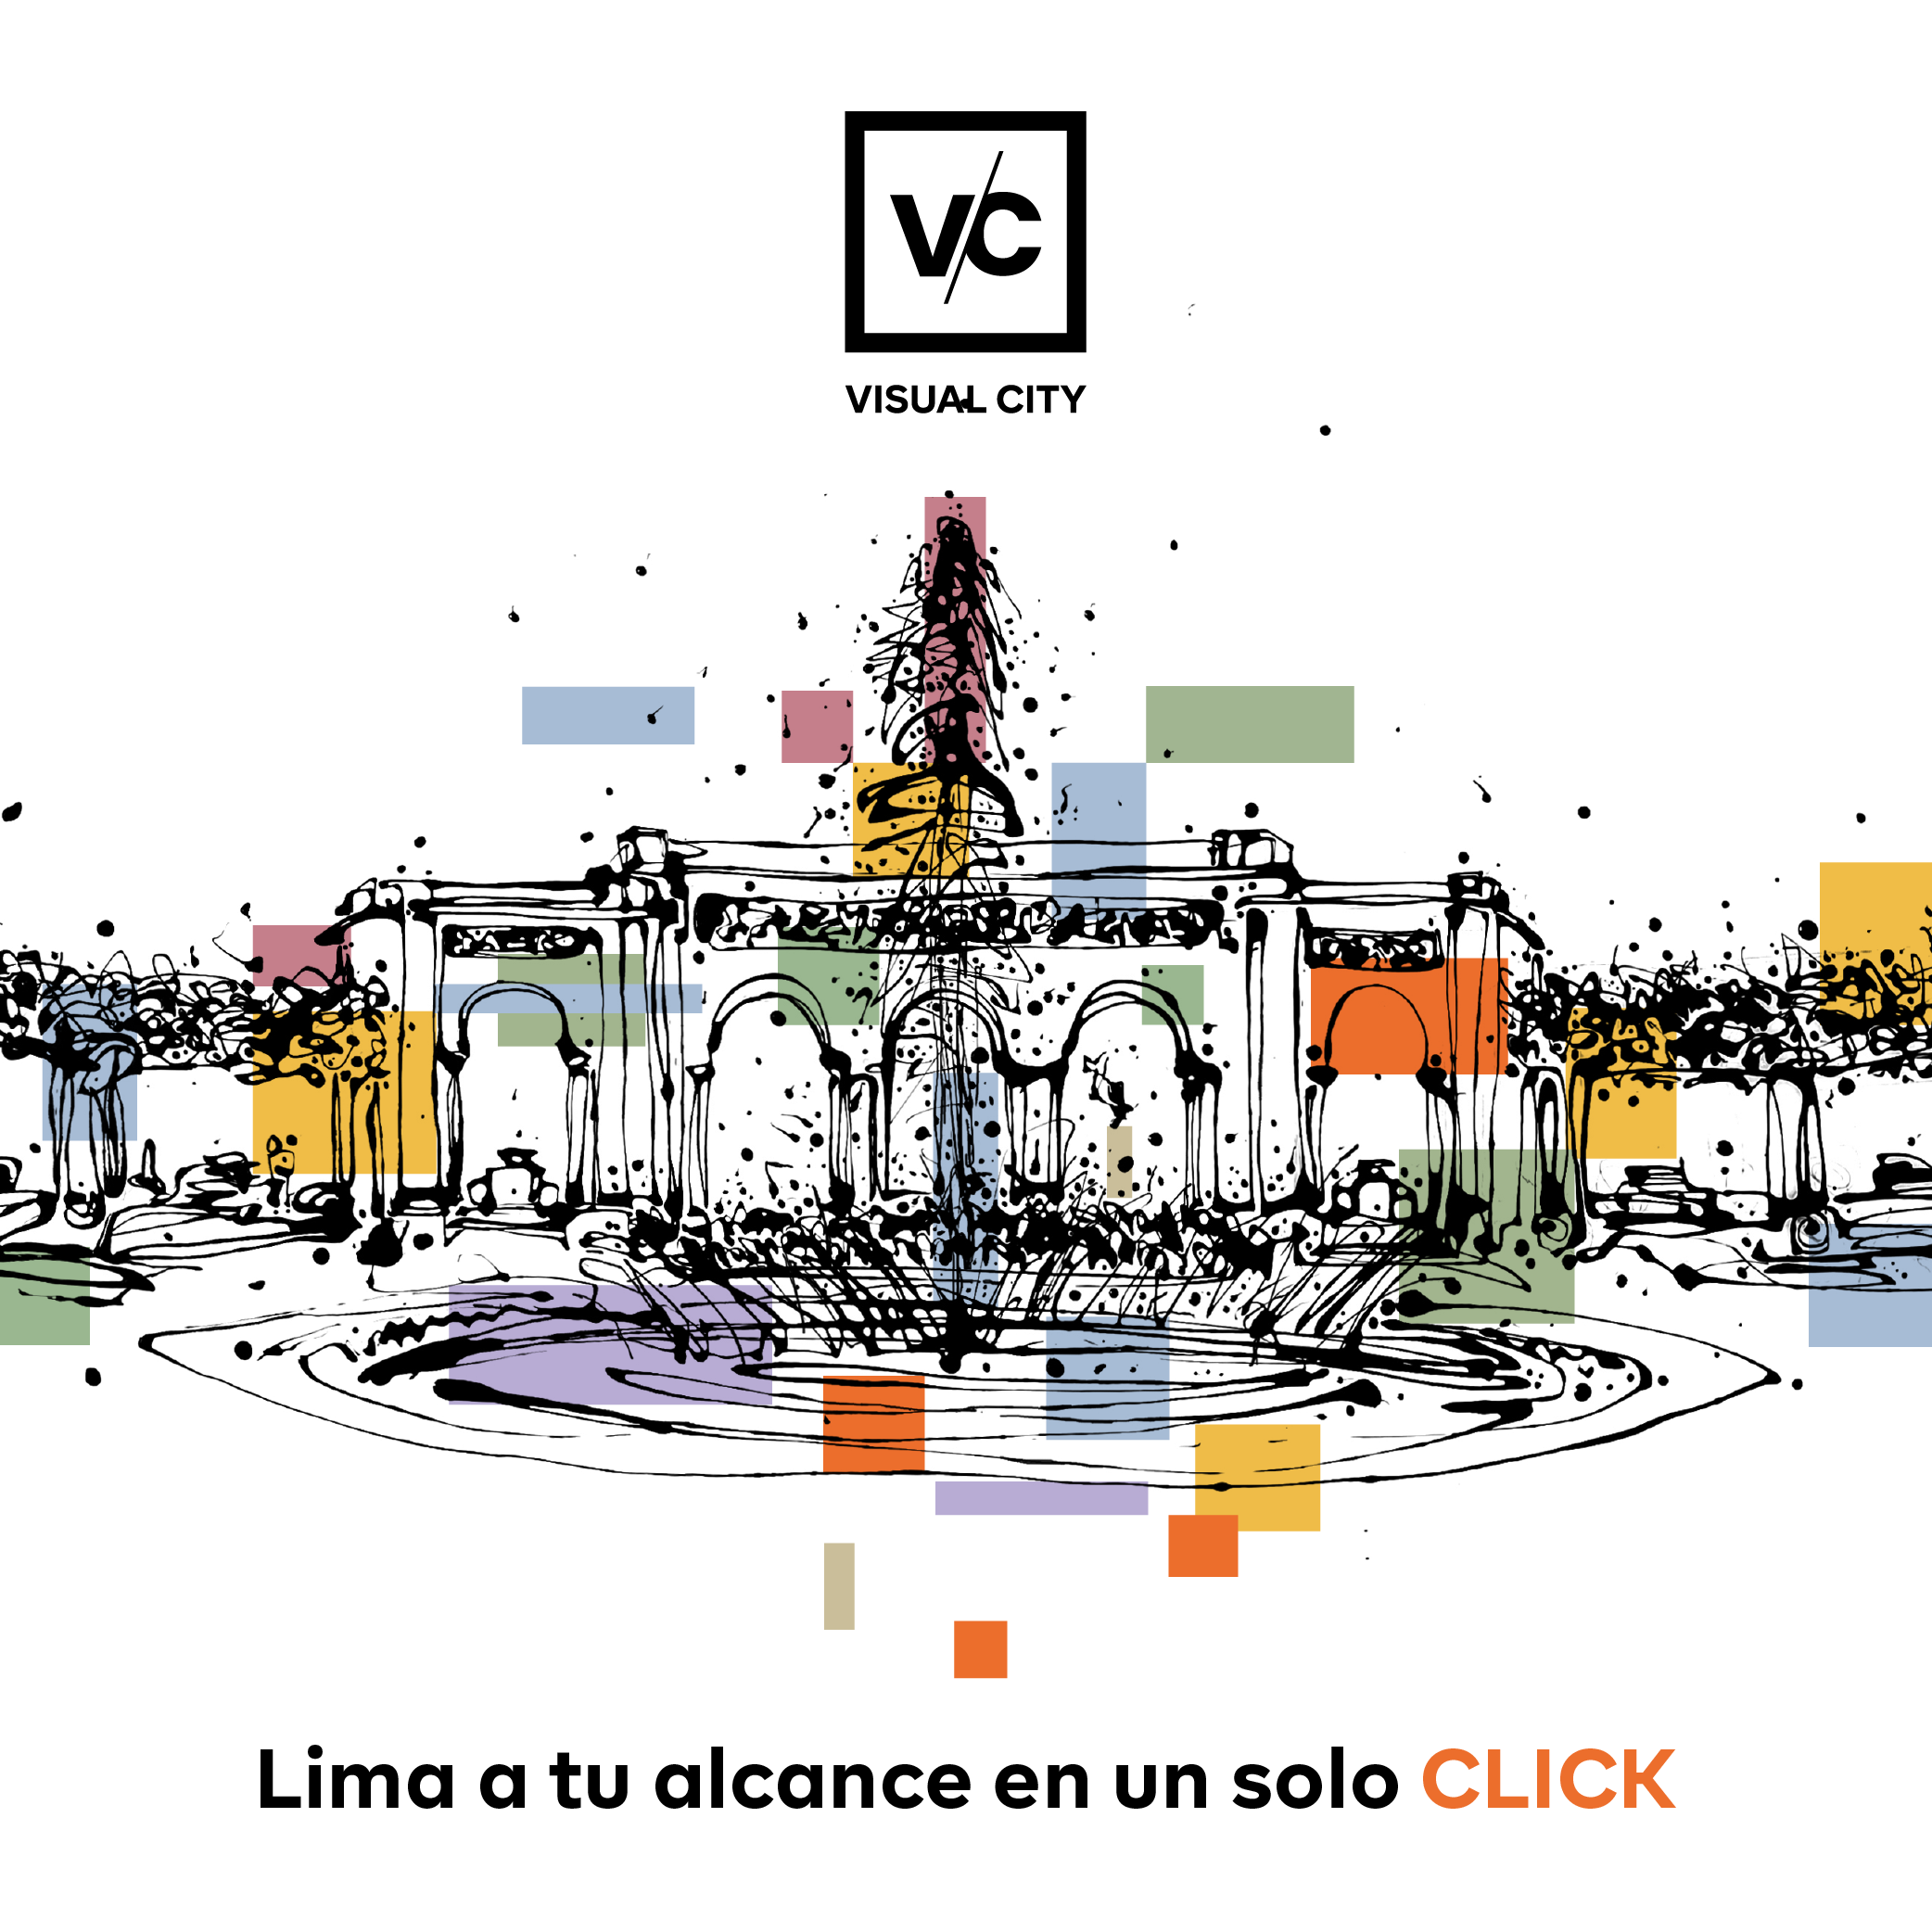 VISUAL CITY: La Guía Digital 360 de Lima